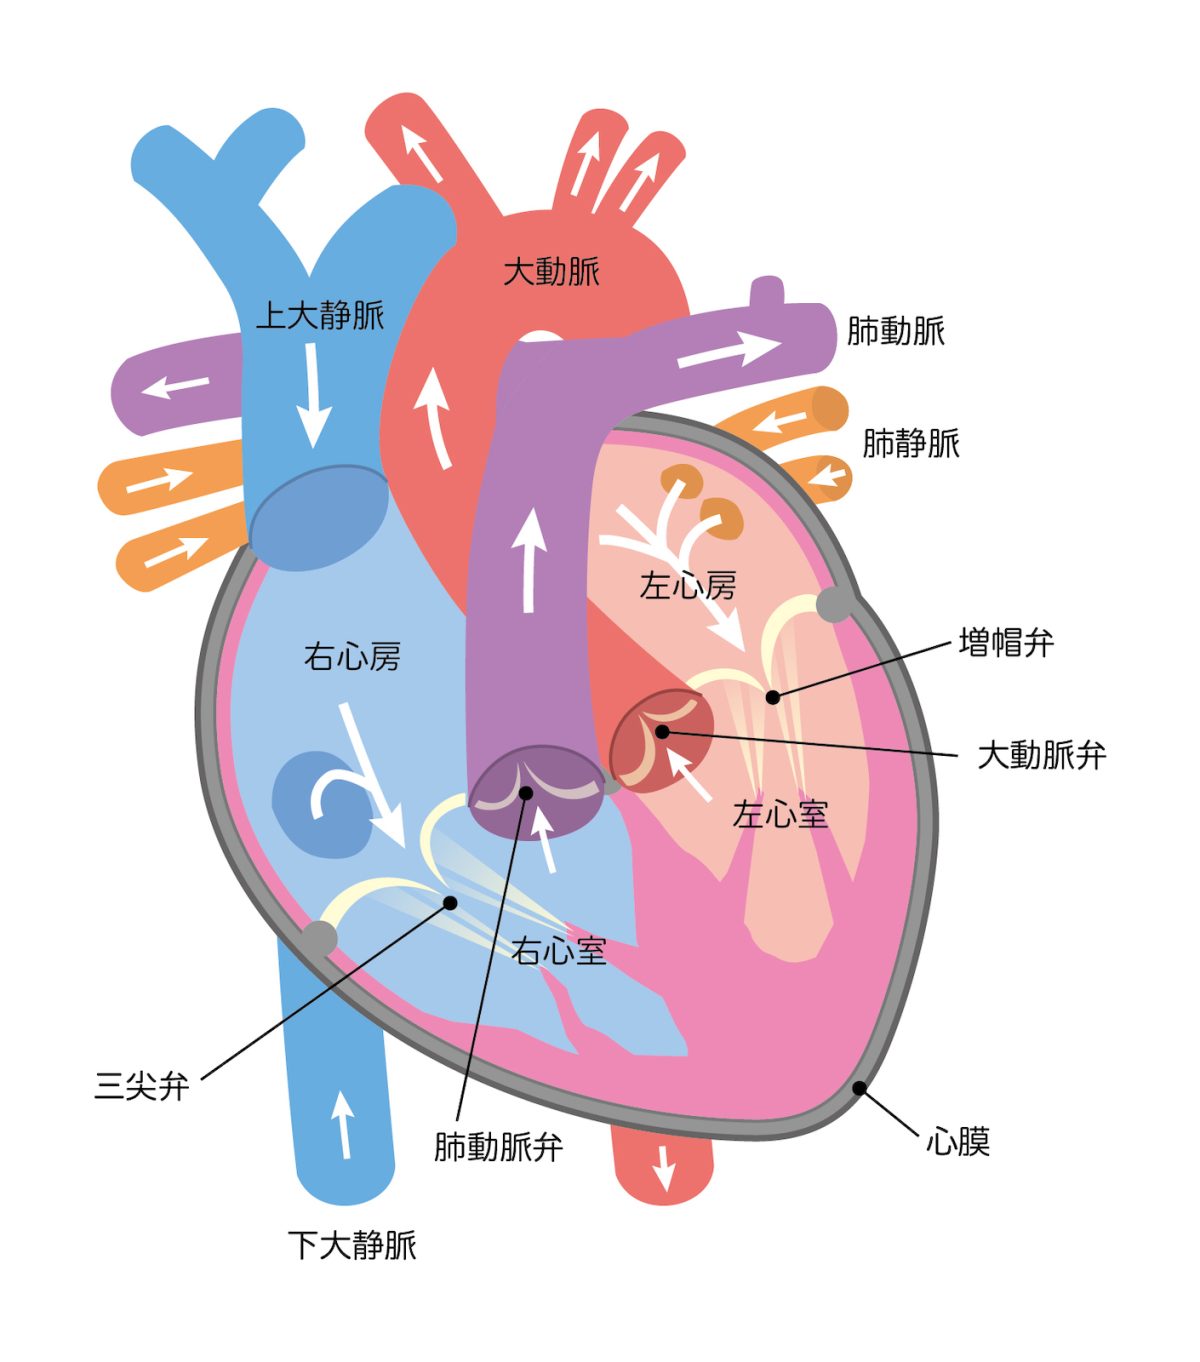 心臓は、右側と左側で働きが違い、右側は肺に血液を送り、左側は全身に血液を送る役目がある